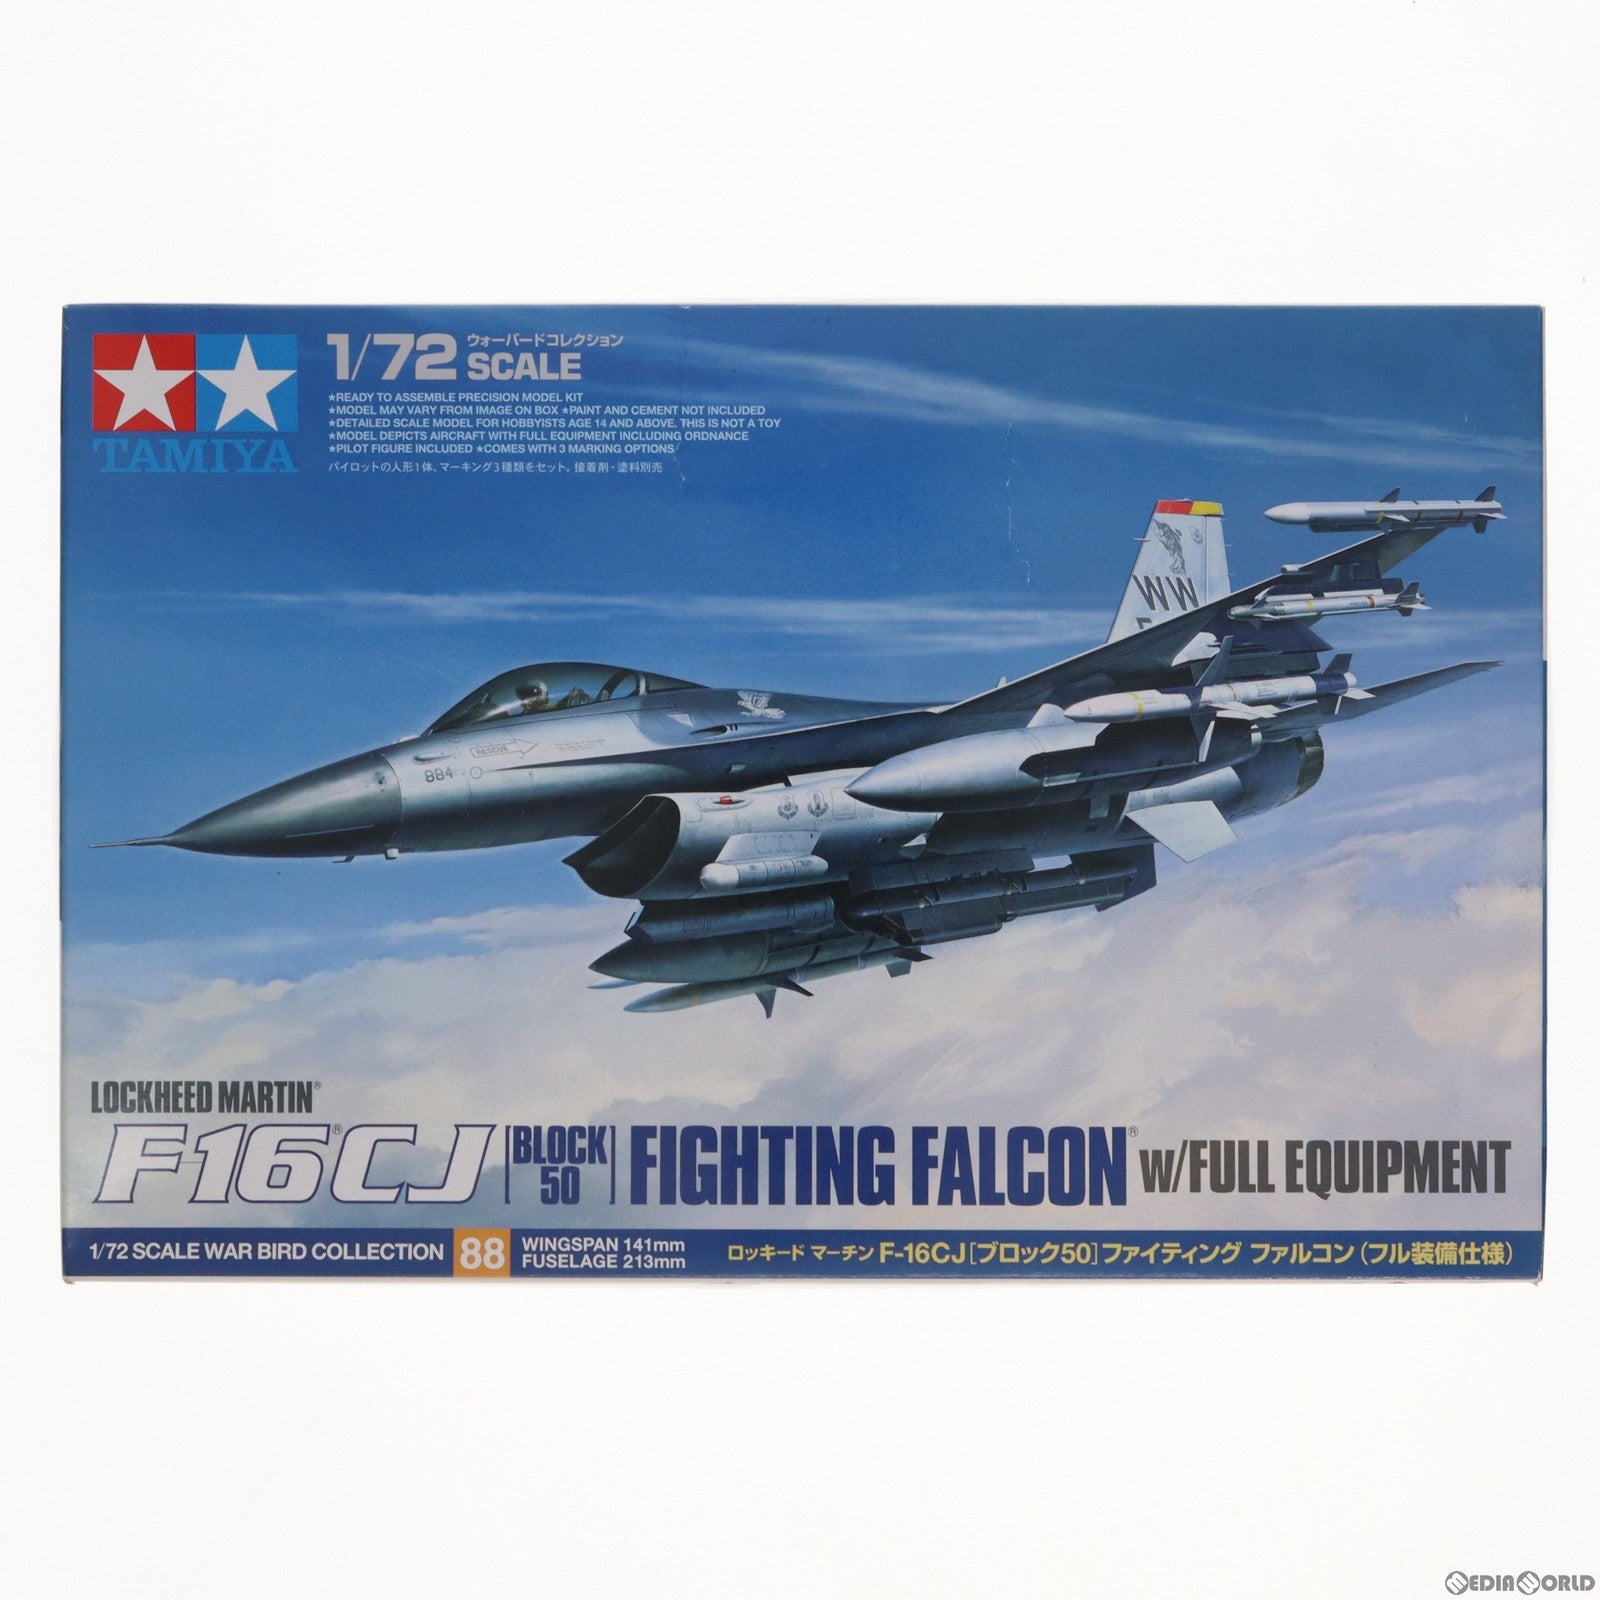 【中古即納】[PTM]ウォーバードコレクション 1/72 ロッキード マーチン F-16CJ (ブロック50) ファイティング ファルコン(フル装備仕様) プラモデル(60788) タミヤ(20150221)